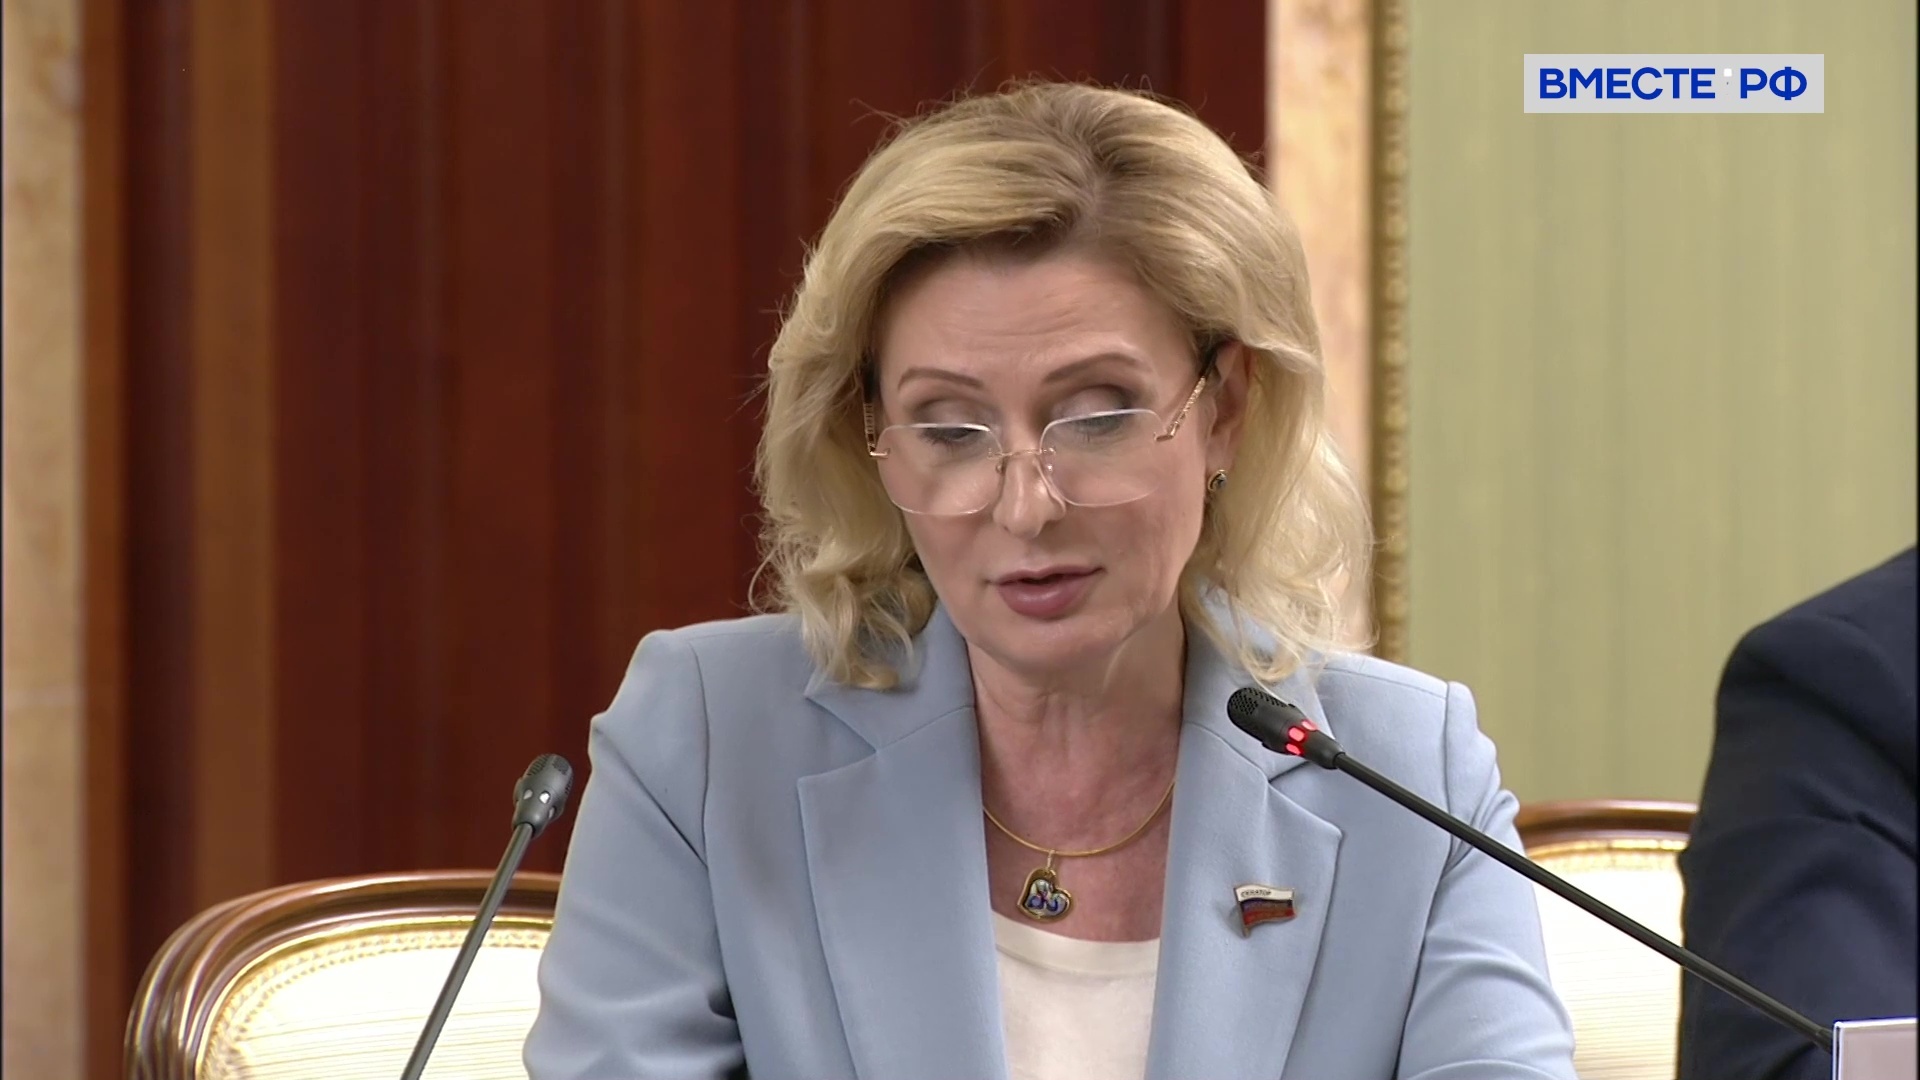 Регистрацию медцинских изделий и препаратов надо ускорить, считает сенатор Святенко